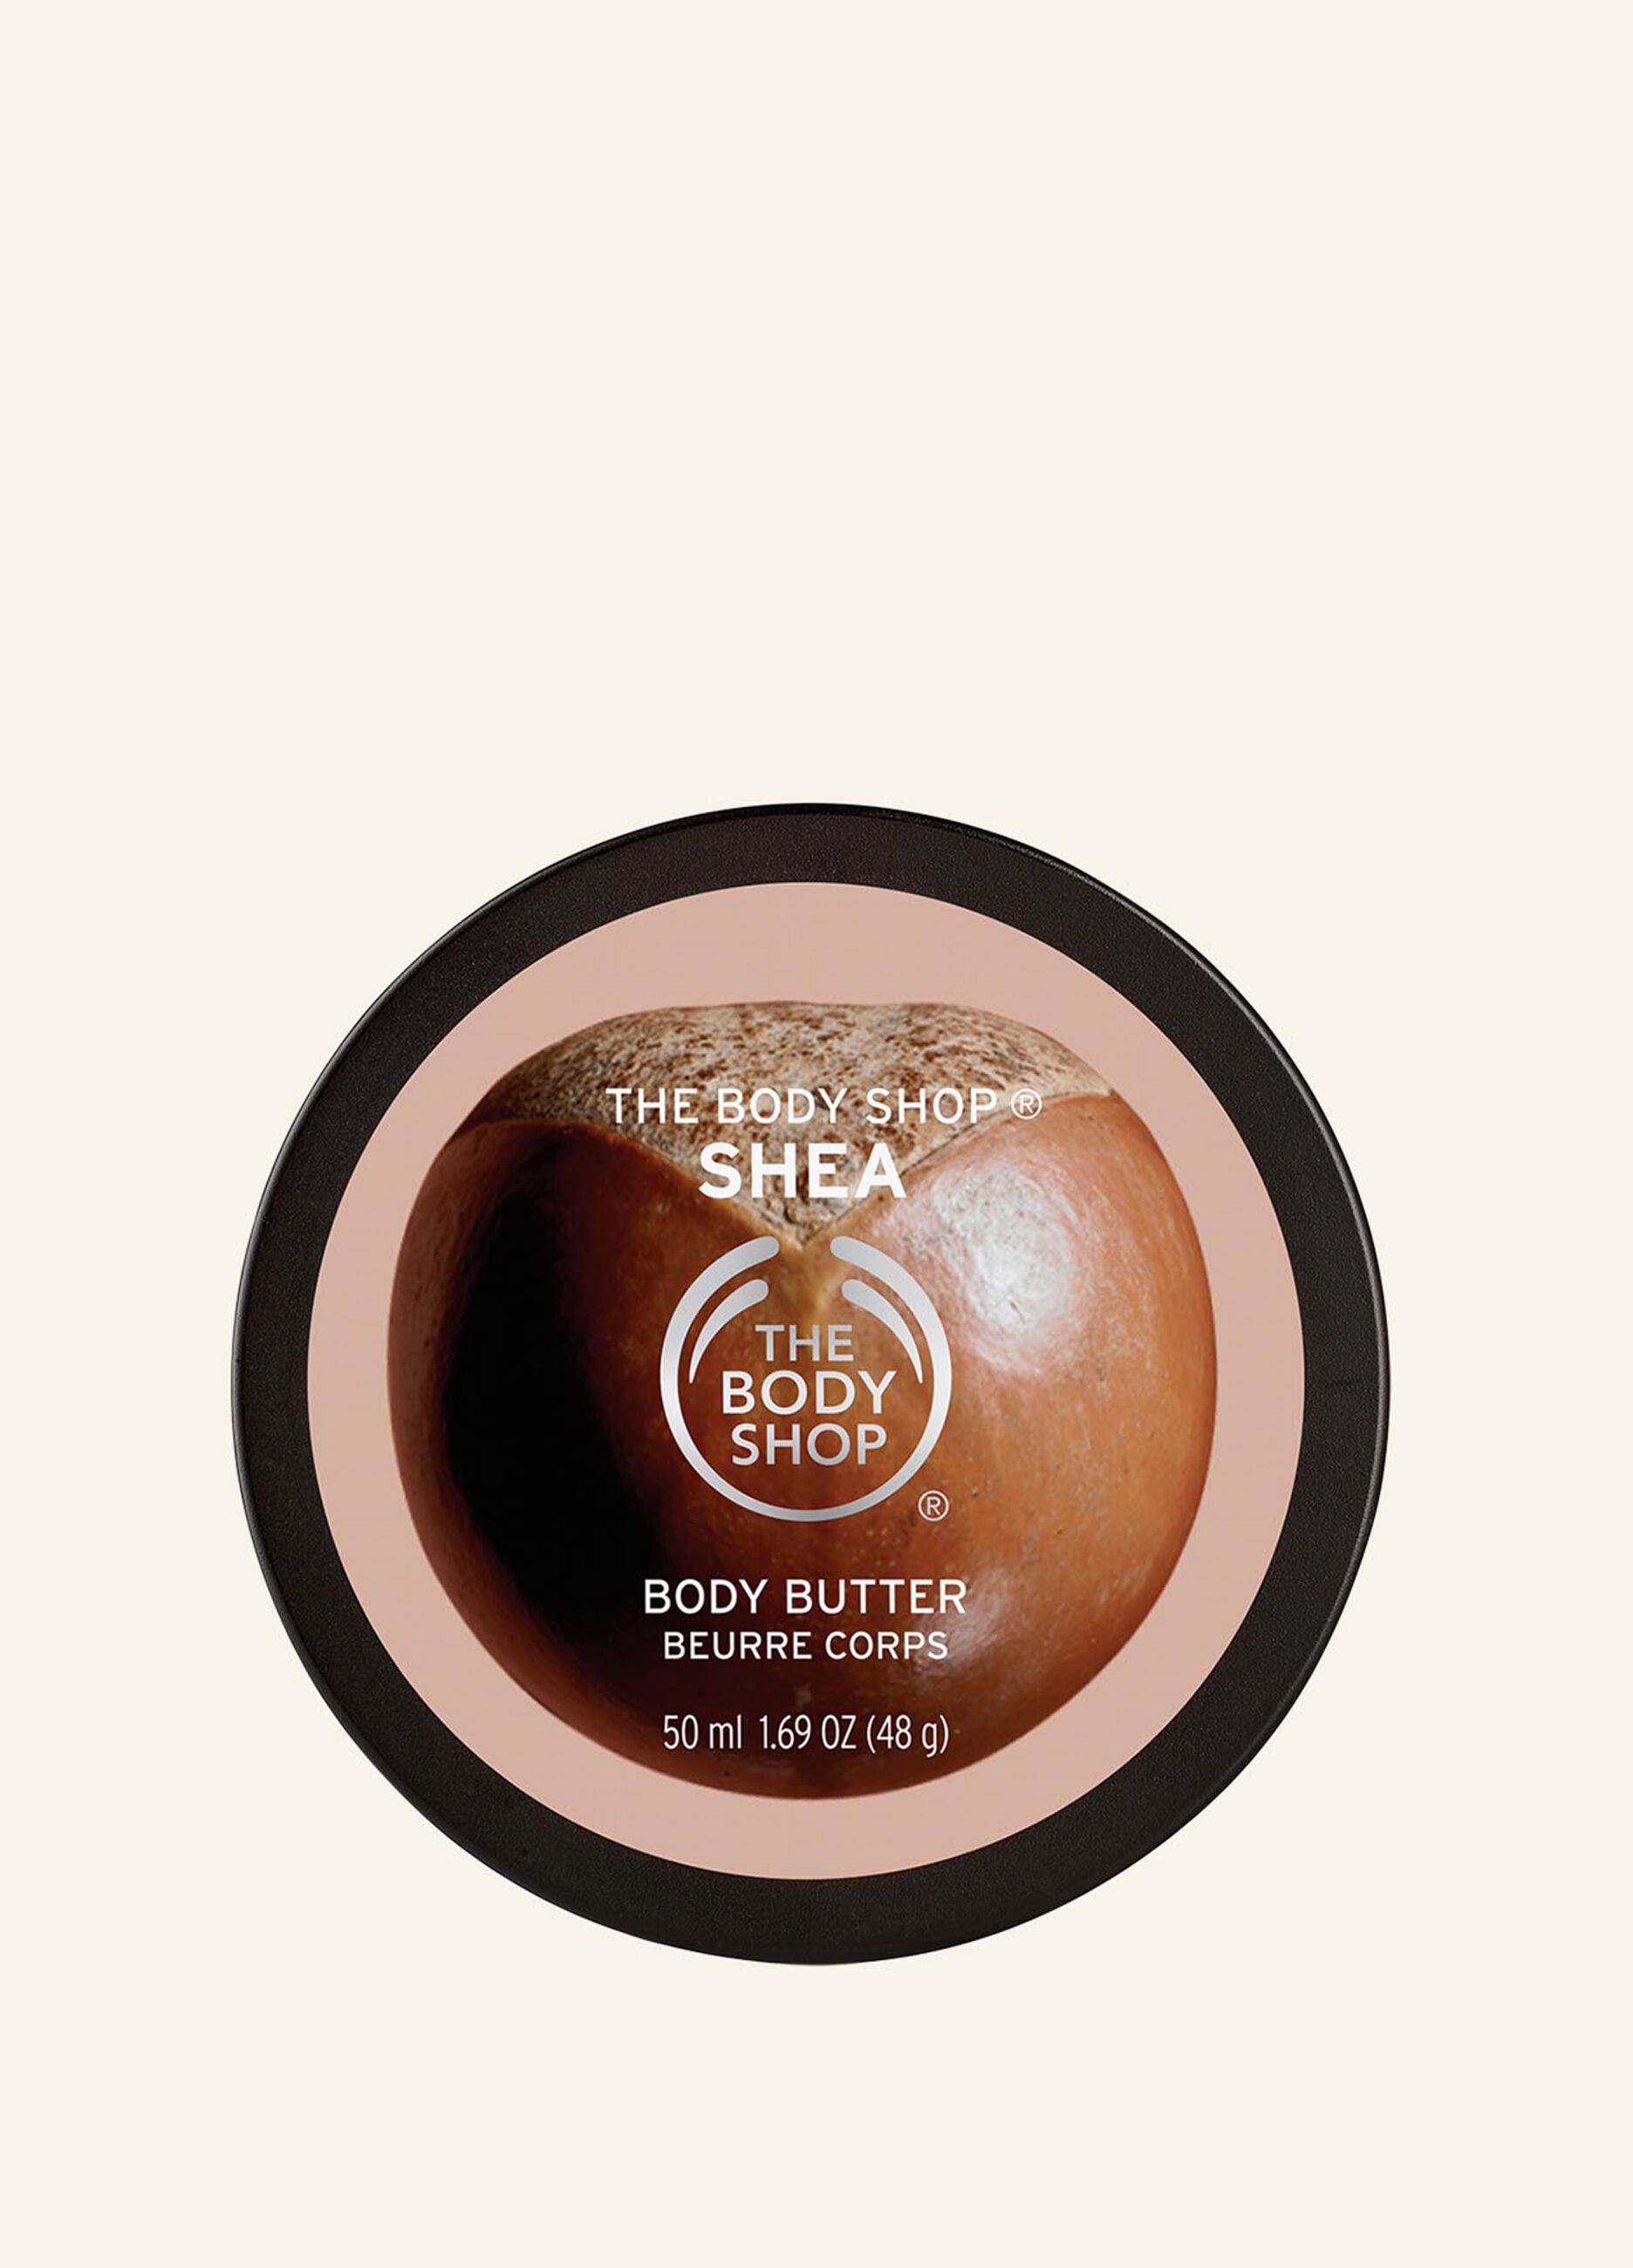 The Body Shop Shea body butter 50ml